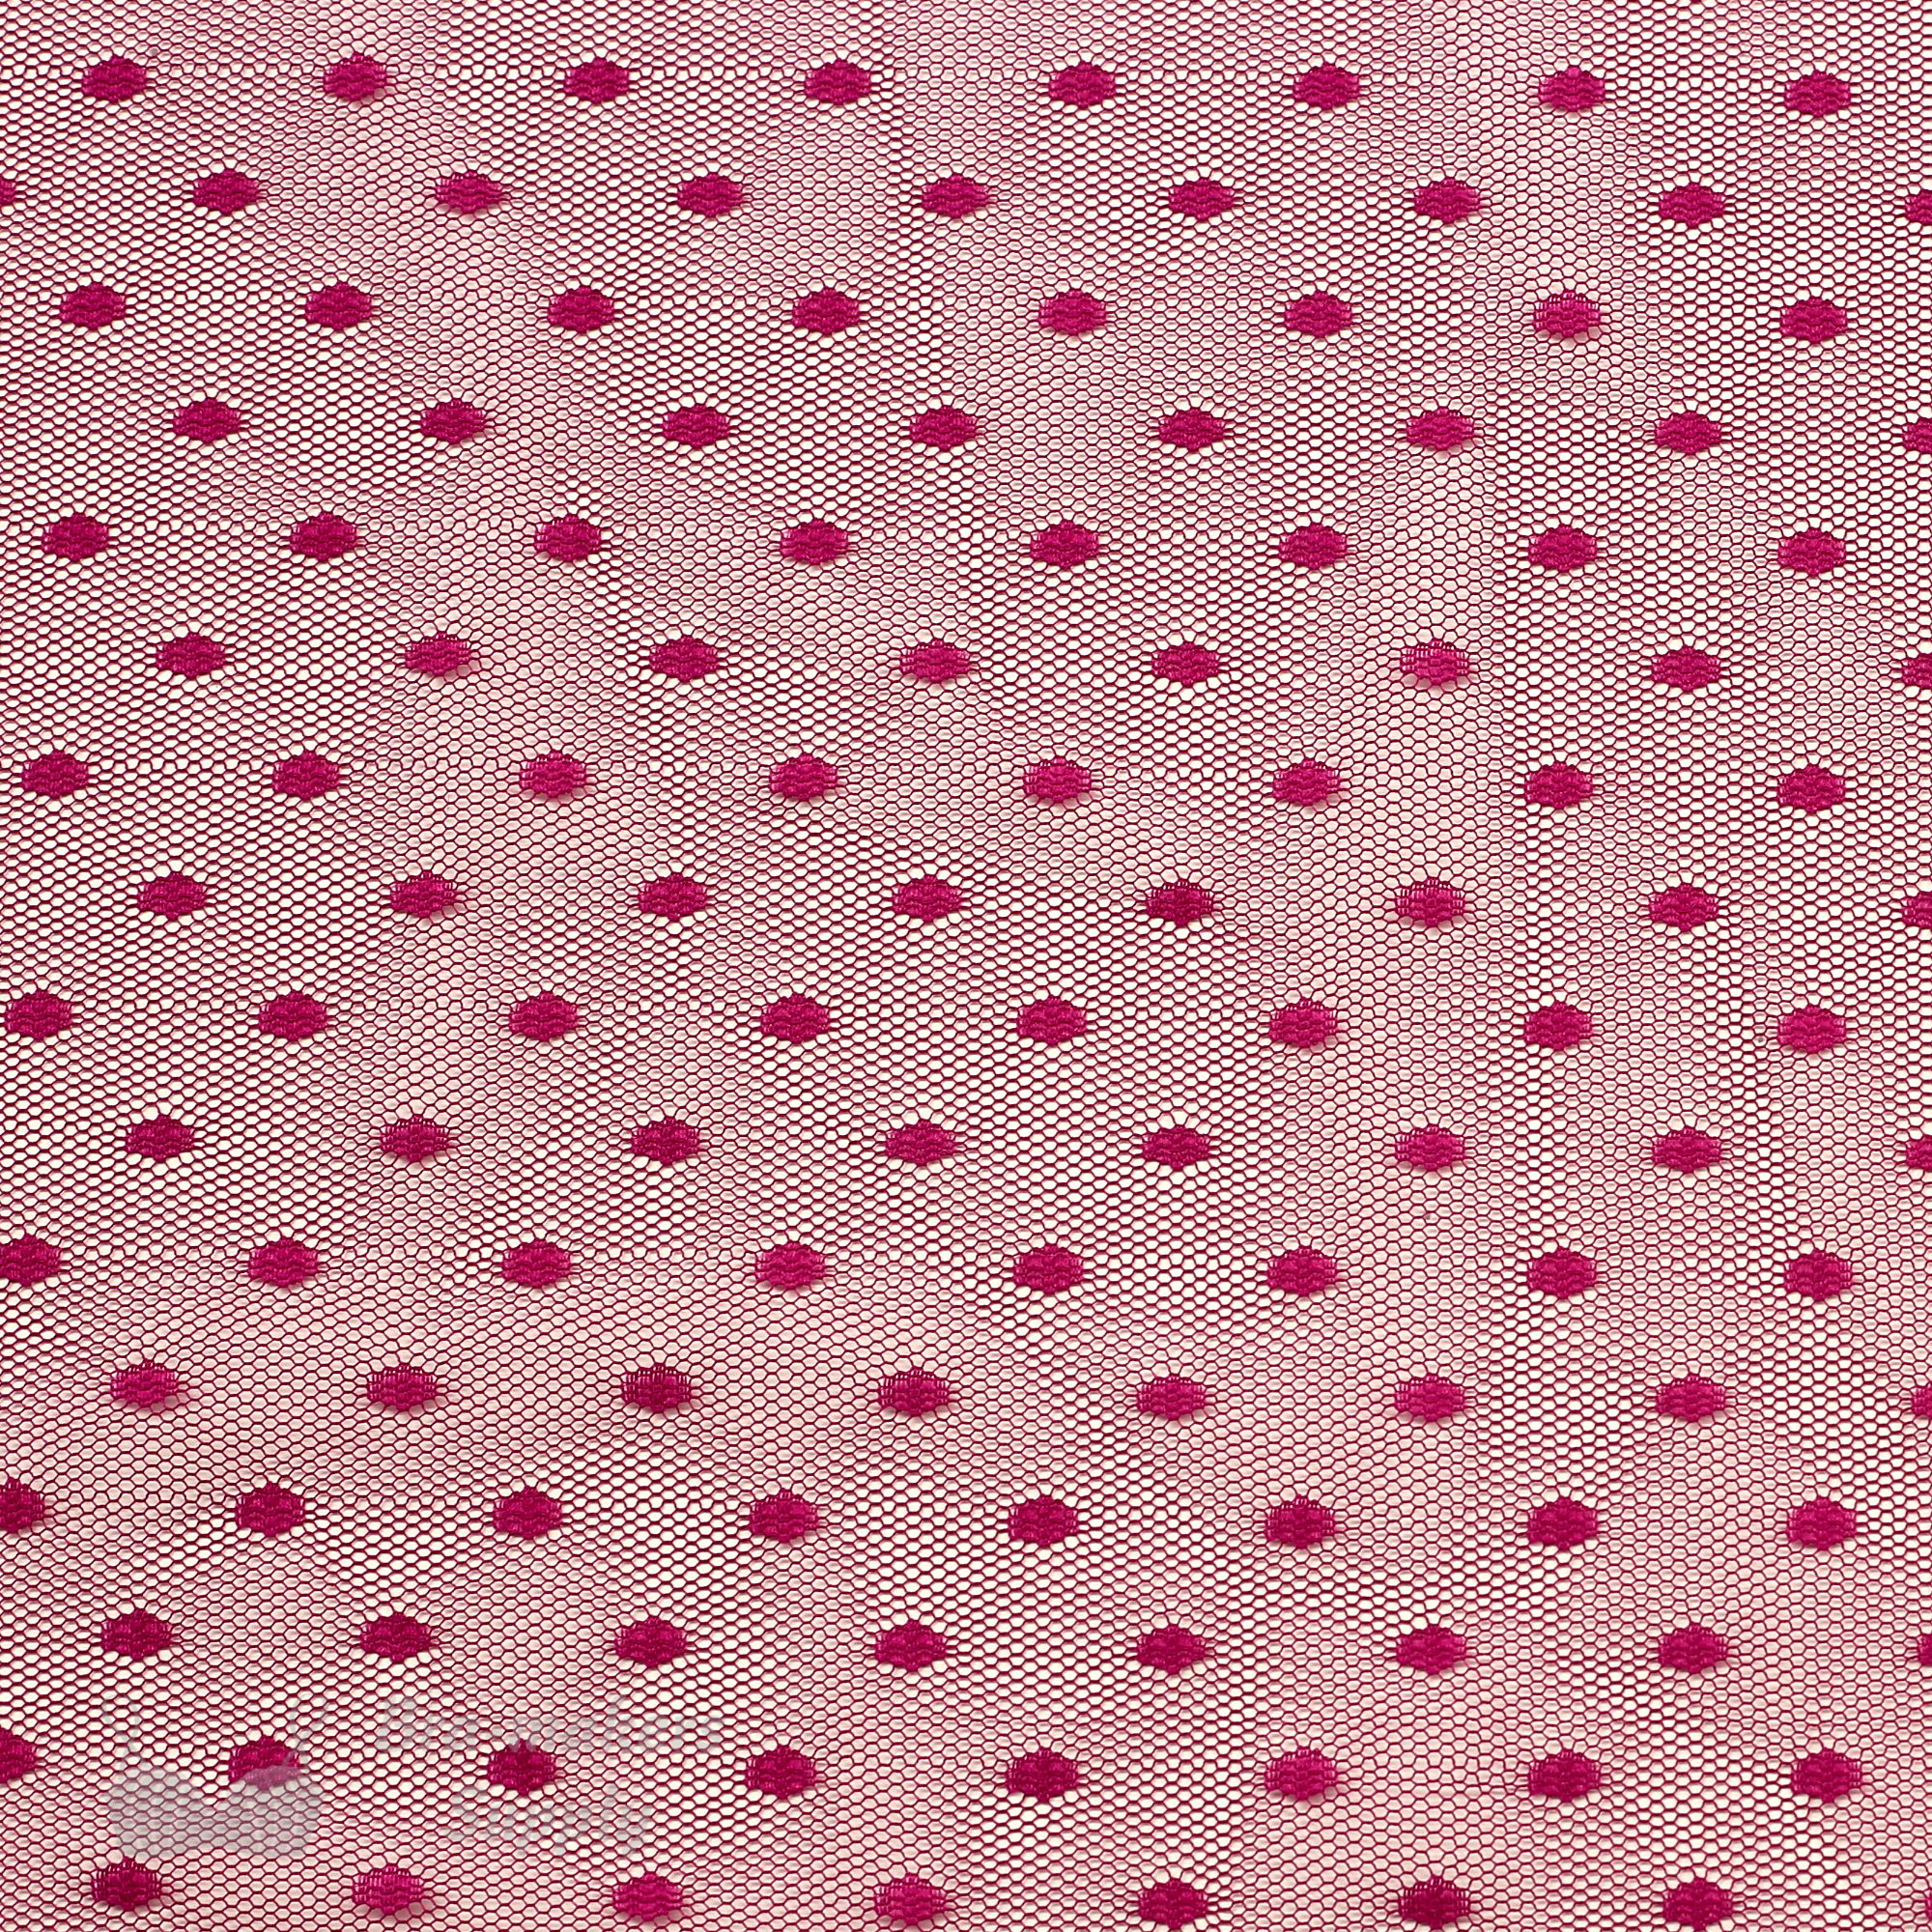 Fun Dot Mesh Fabric, a playful mesh fabric